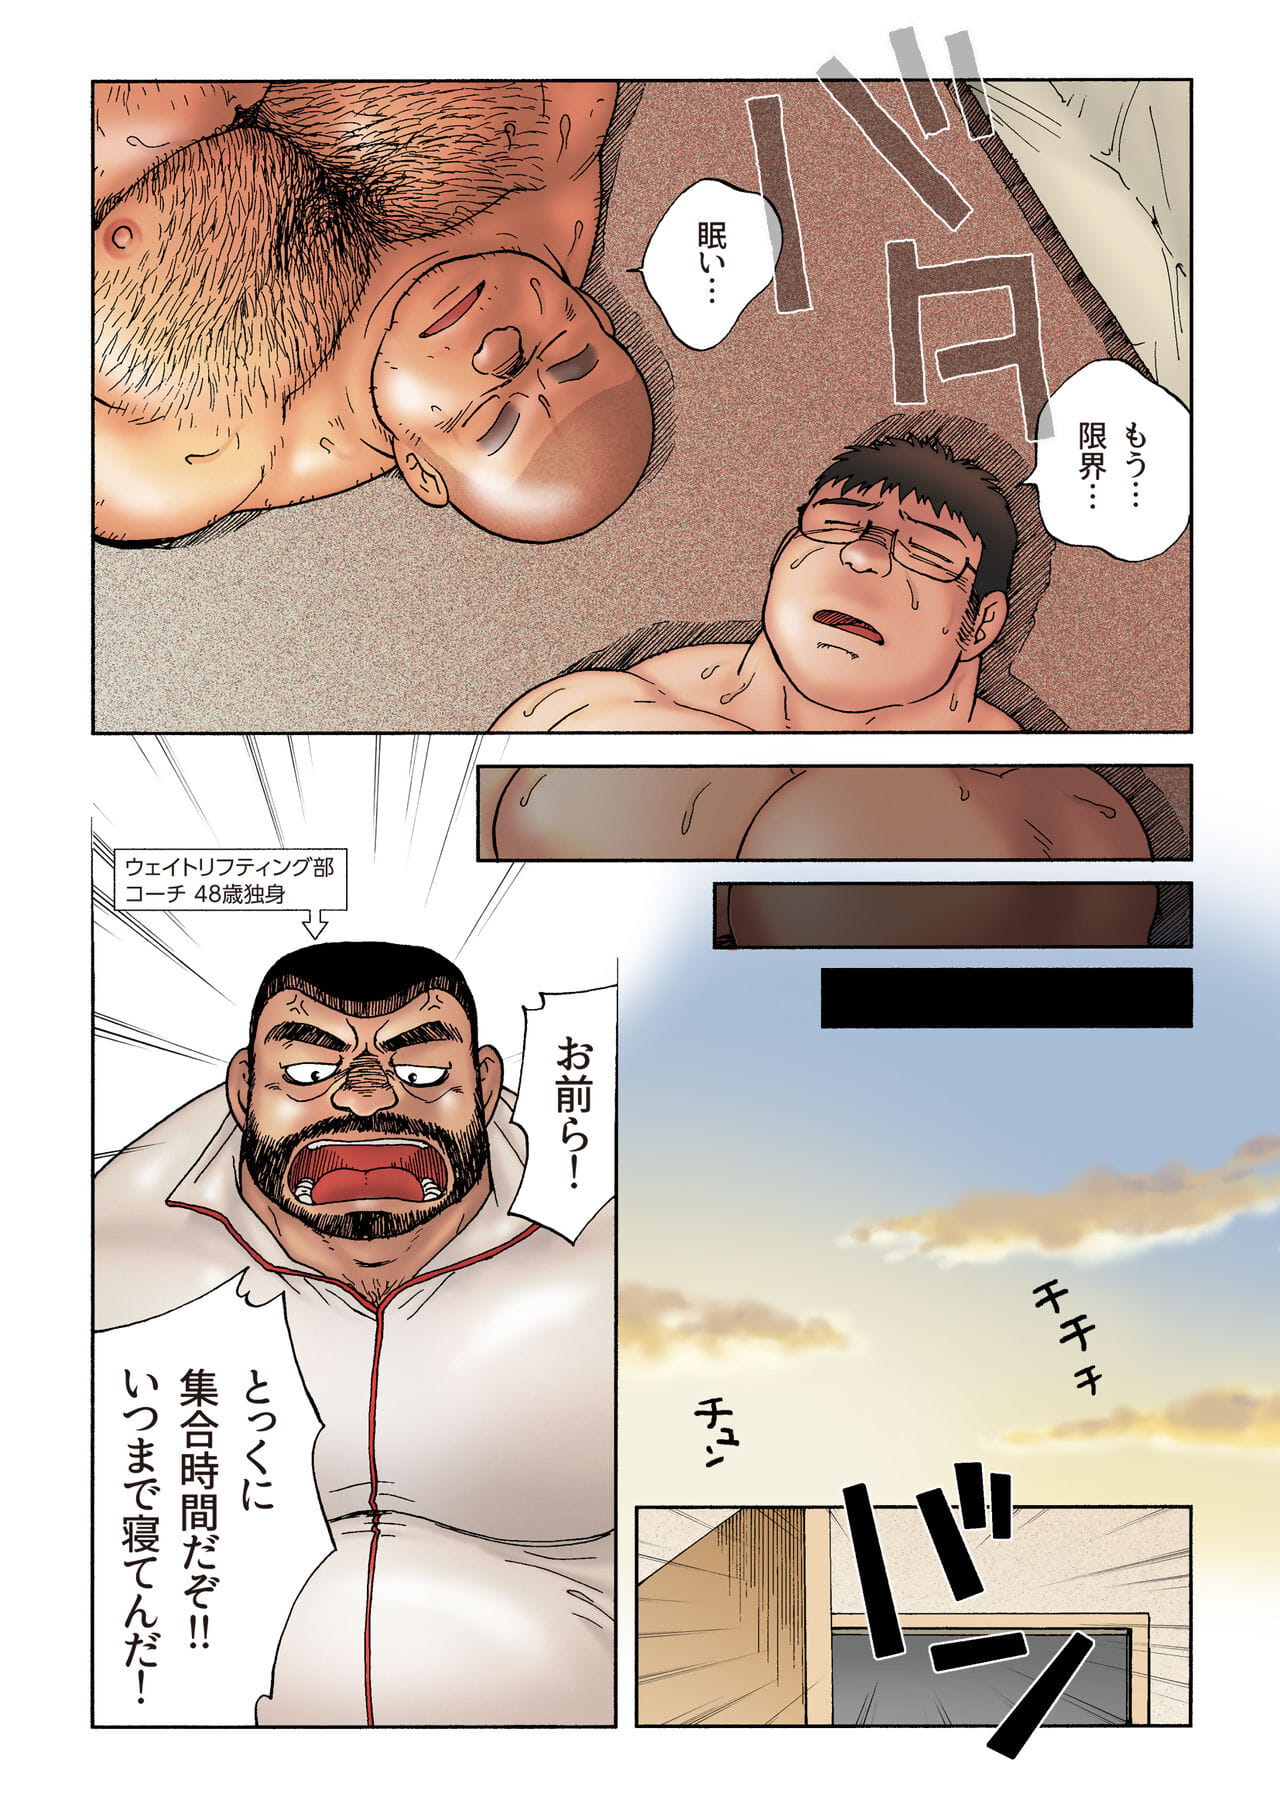 danshi koukousei levantador de pesas Taikai ir no Hotel De no Aoi Yoru Parte 2 page 1